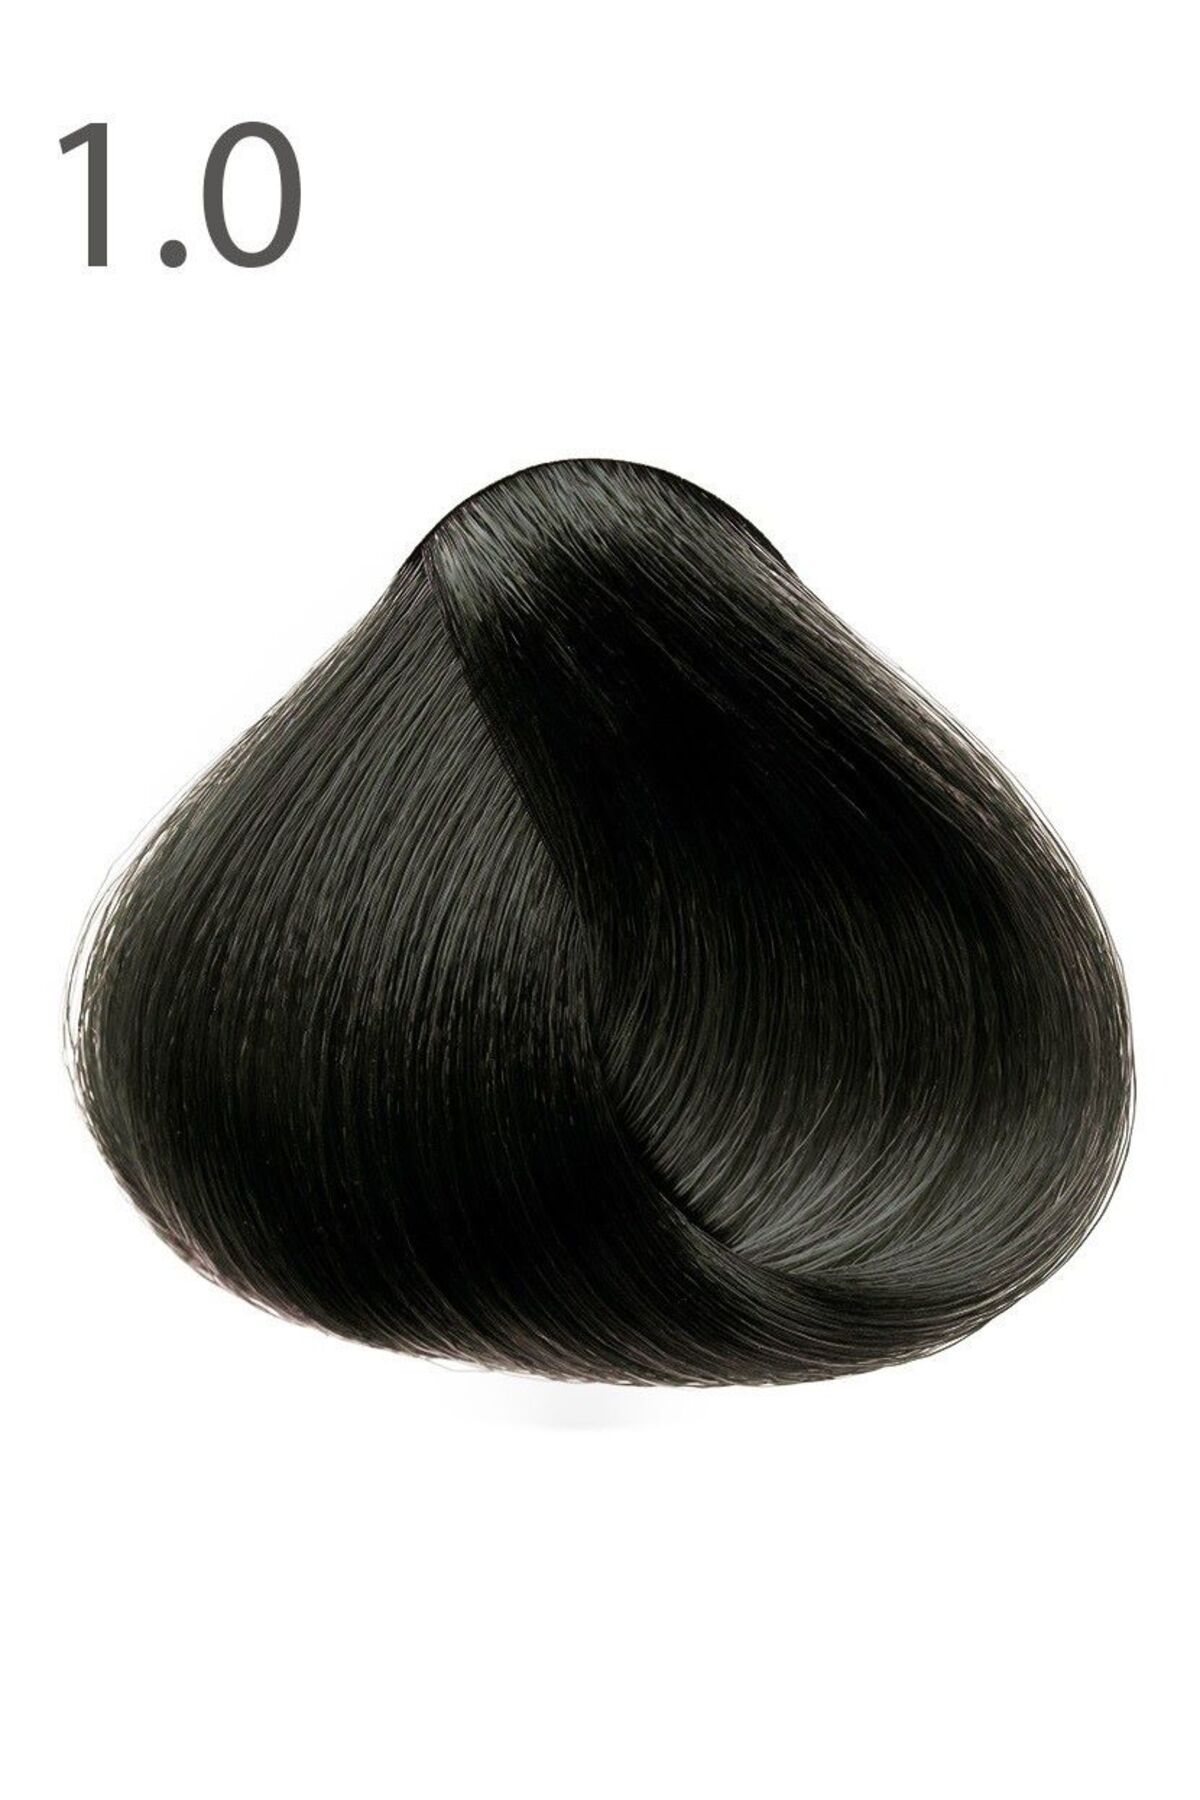 Faberlic SALONCARE Serisi Kalıcı Saç Boyası - Siyah Agat 1.0*8256